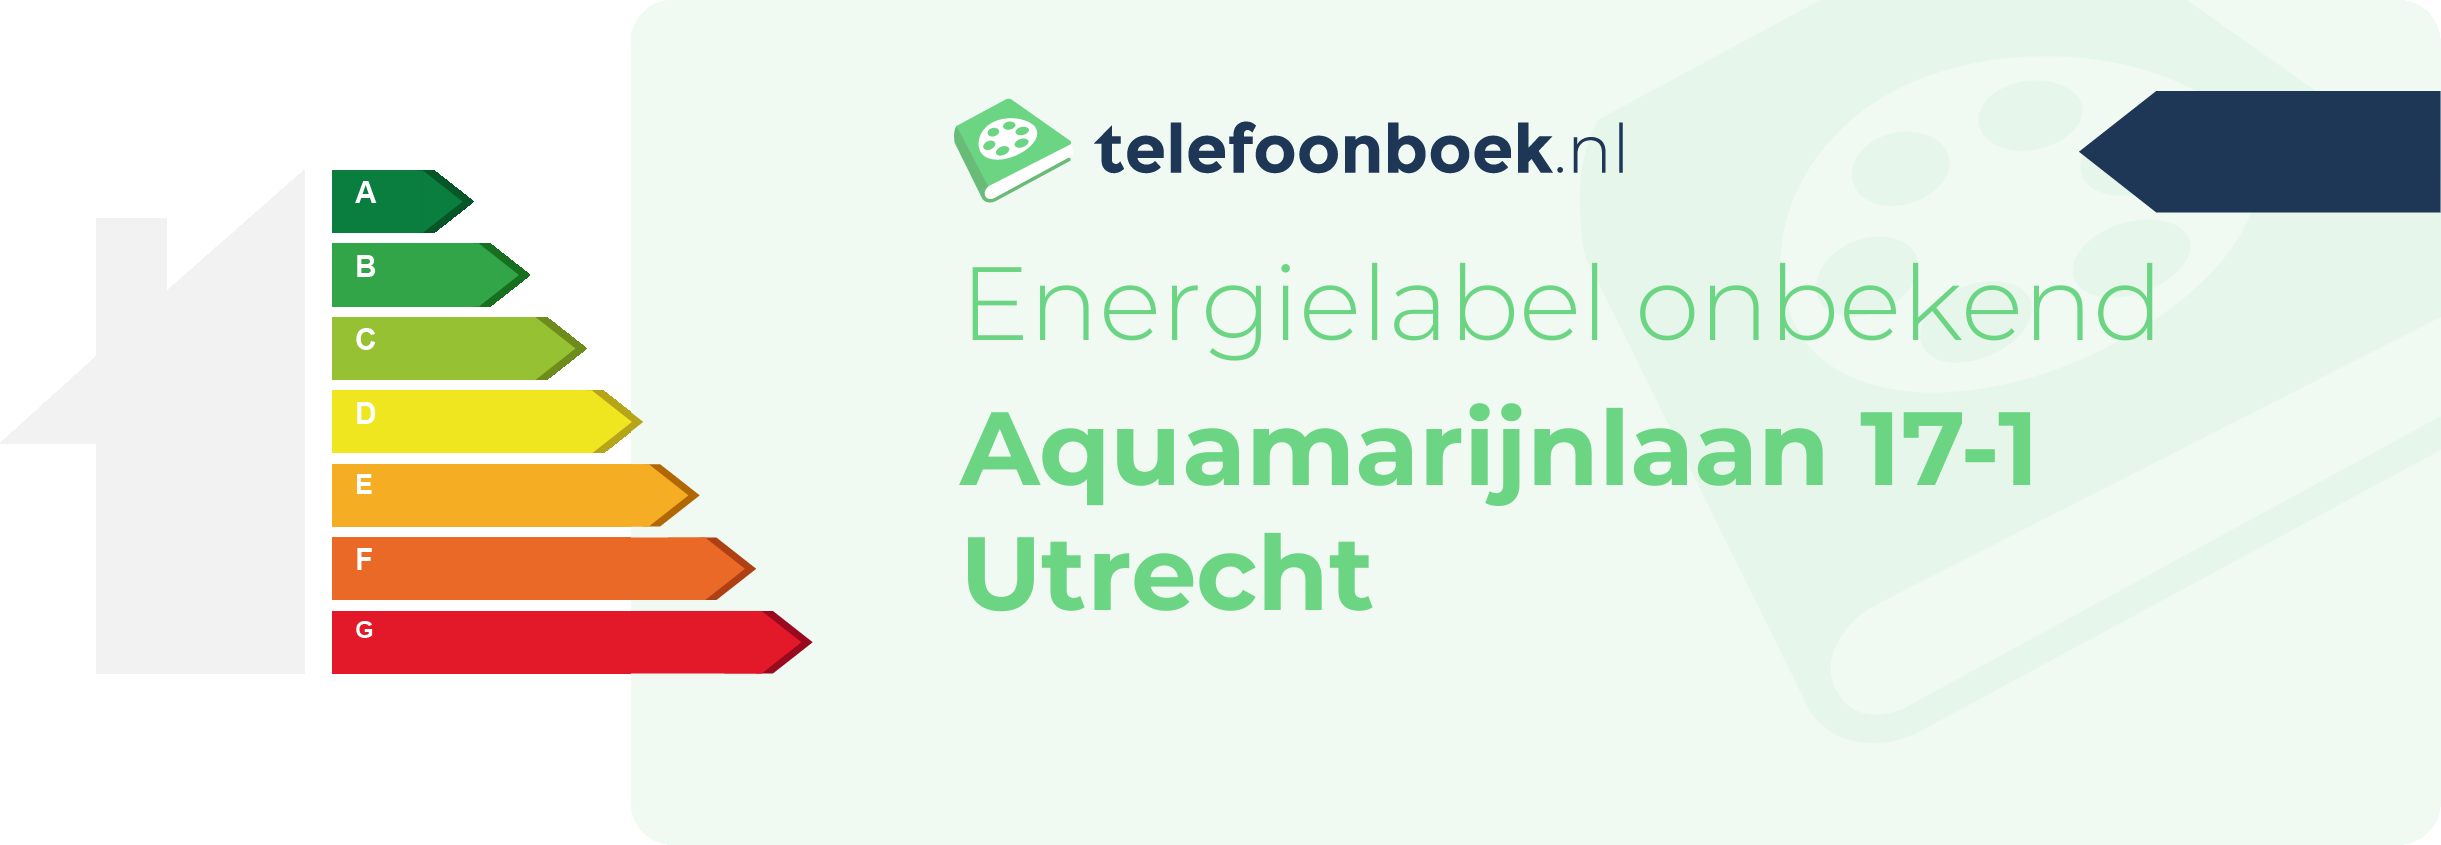 Energielabel Aquamarijnlaan 17-1 Utrecht